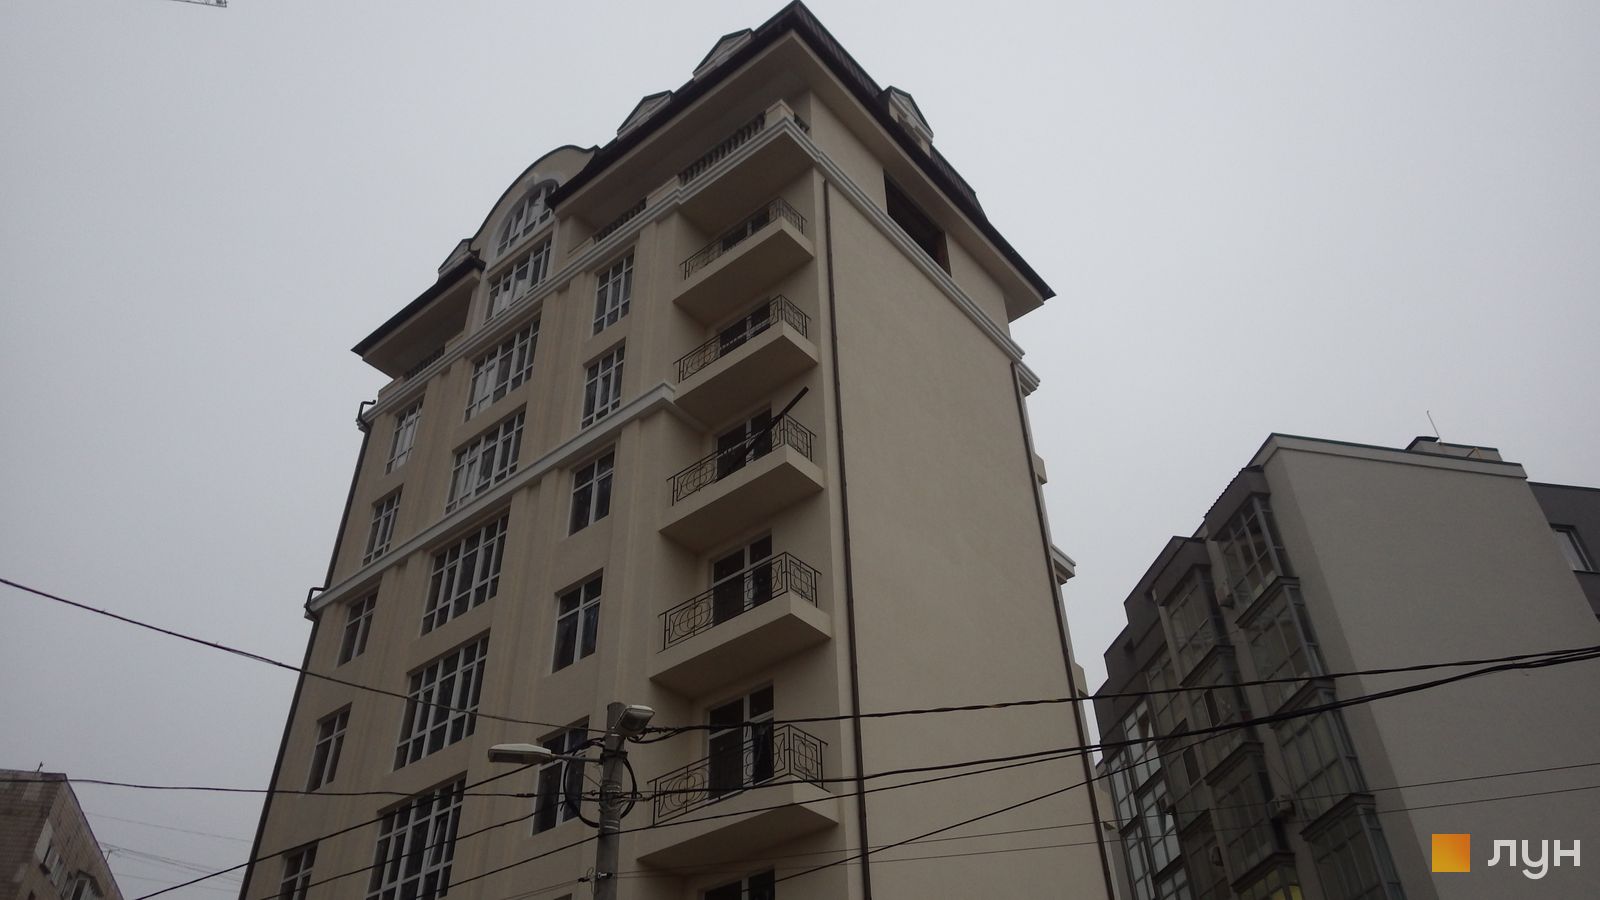 Моніторинг будівництва Клубний будинок „На Соловцова“ - Ракурс 3, листопад 2019